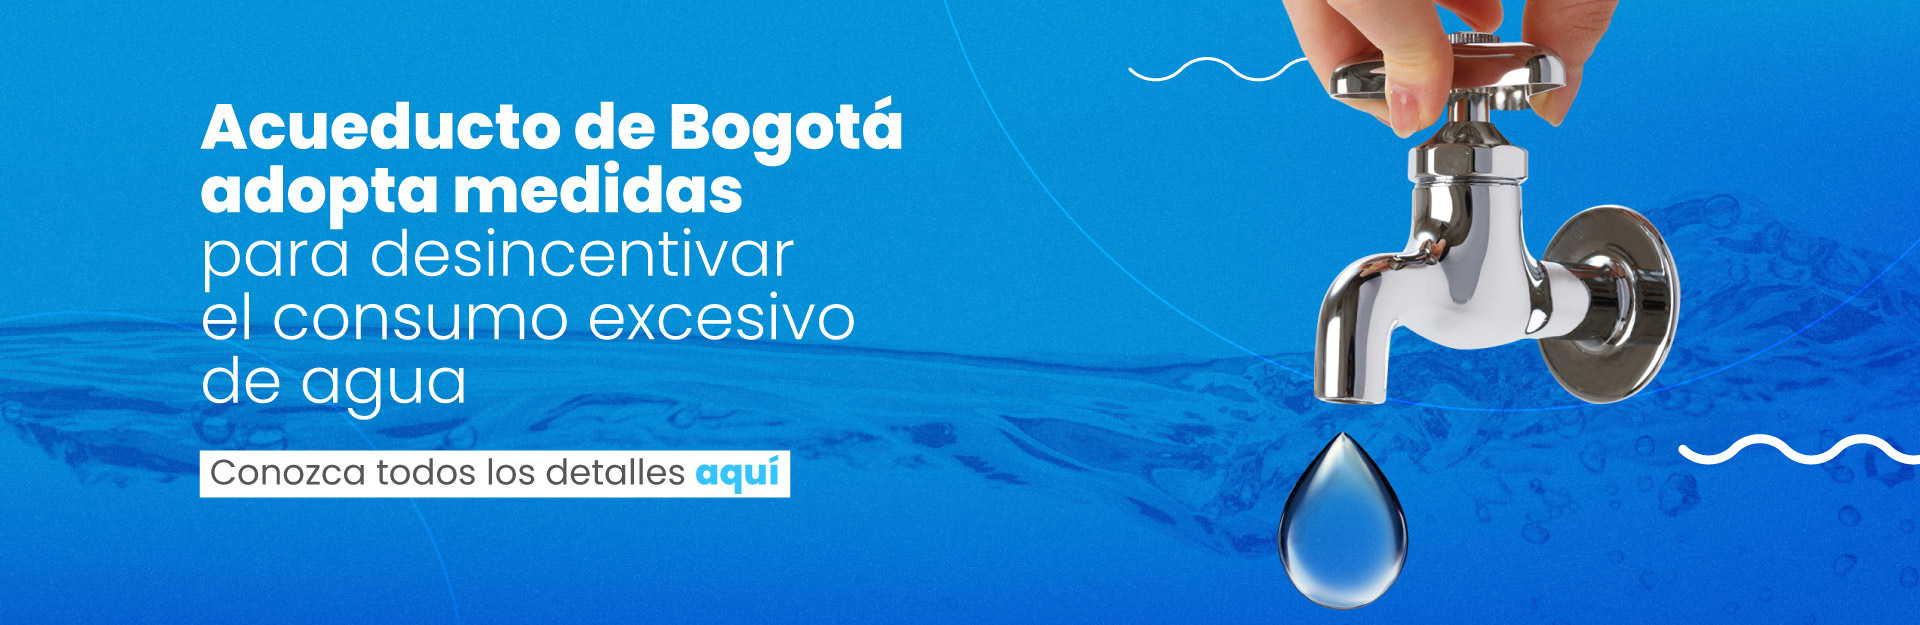 Acueducto de Bogotá adopta medidas para desincentivar el consumo excesivo de agua